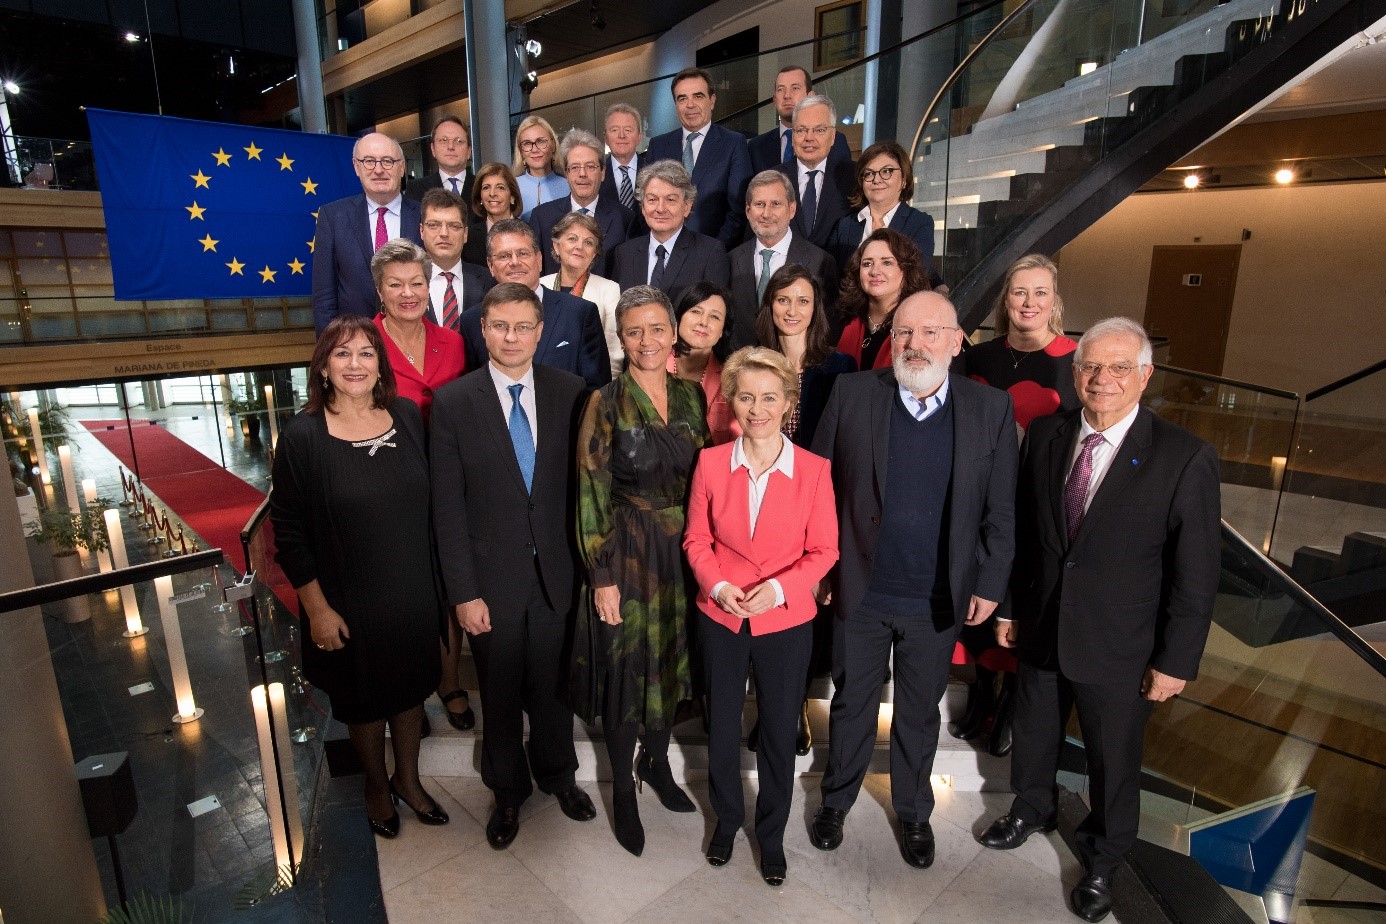 Gruppenfoto von der Kommission von Ursula von der Leyen, Foto: EC – Audiovisual Services/Mauro Bottaro